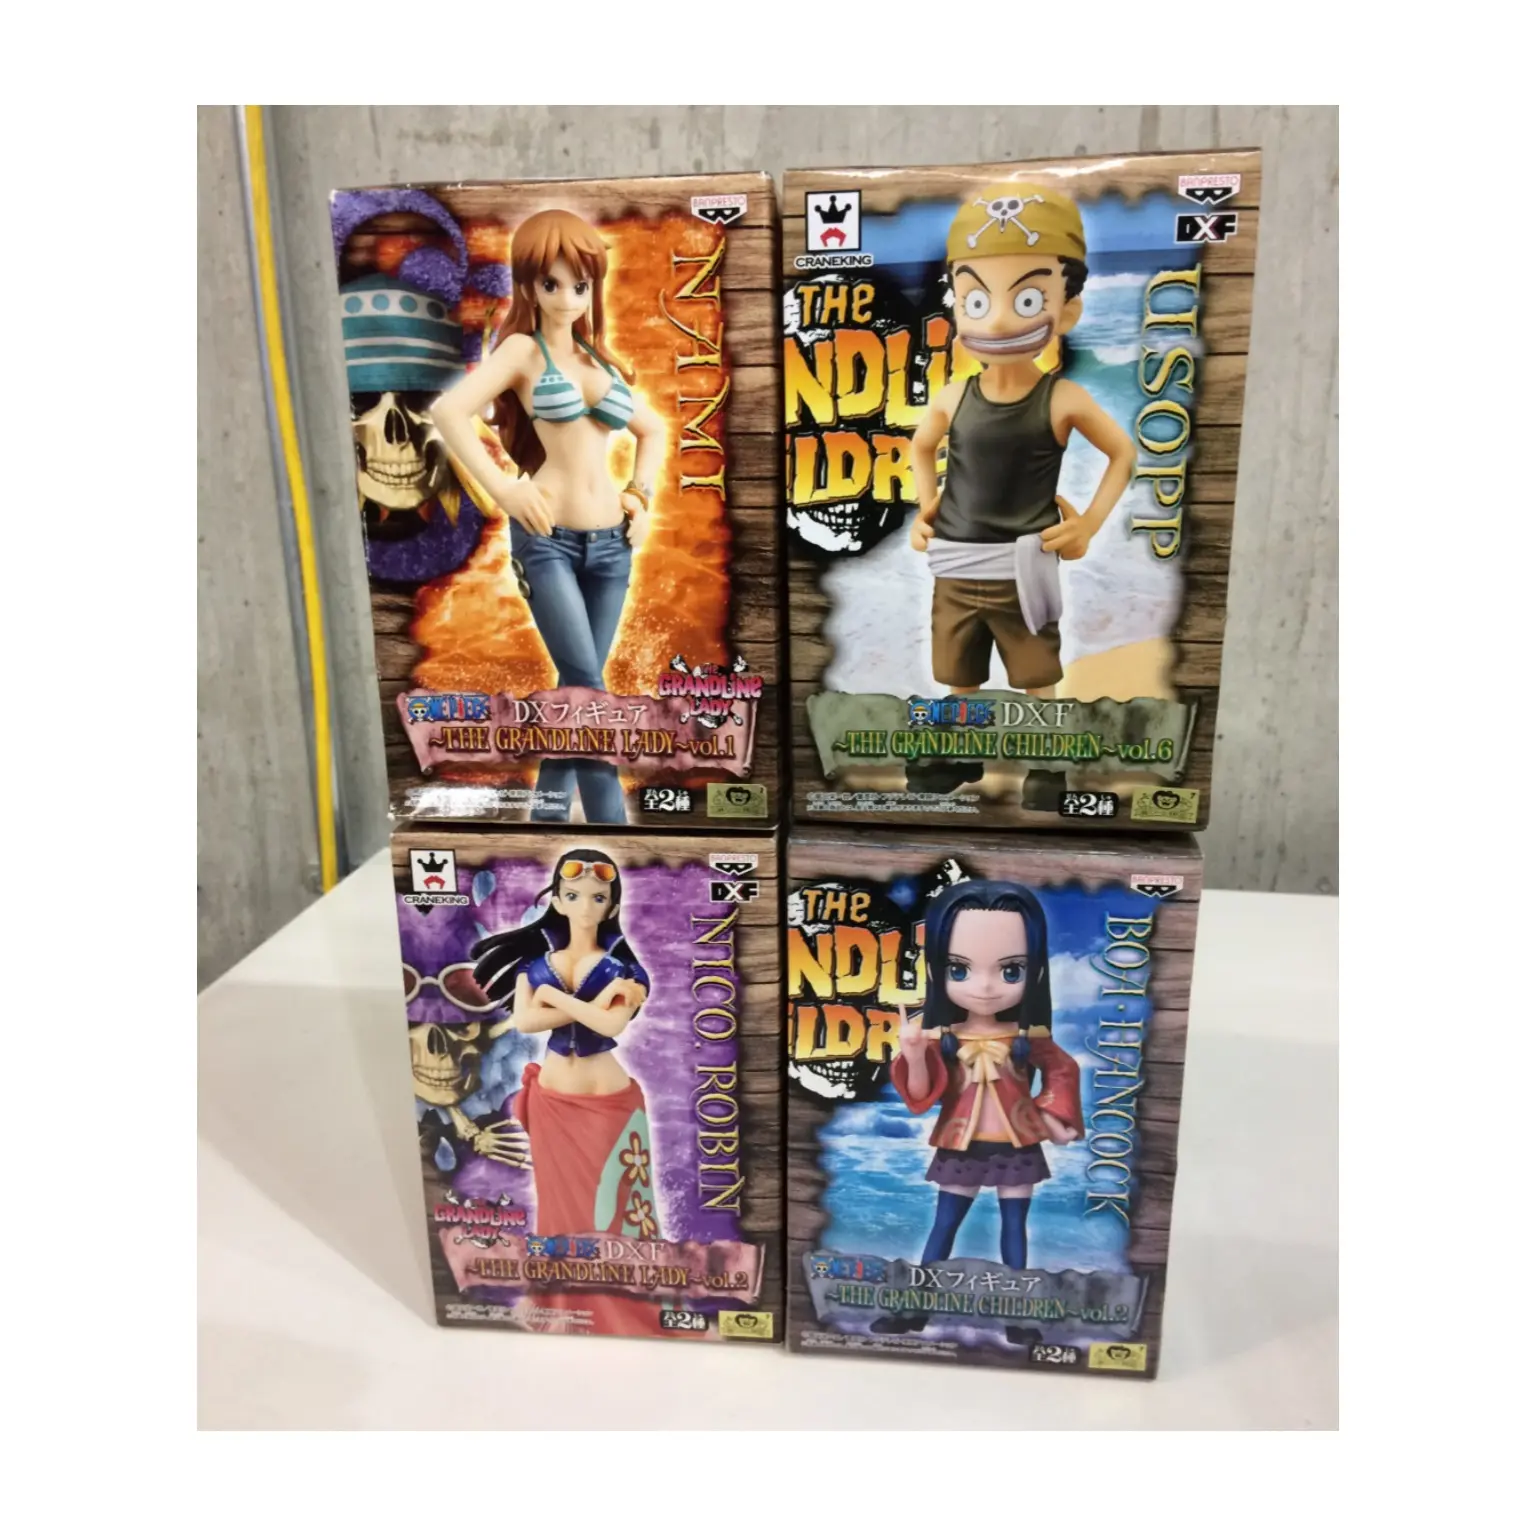 Популярная японская фигурка аниме из ПВХ в качестве приза, продаваемая в коробках